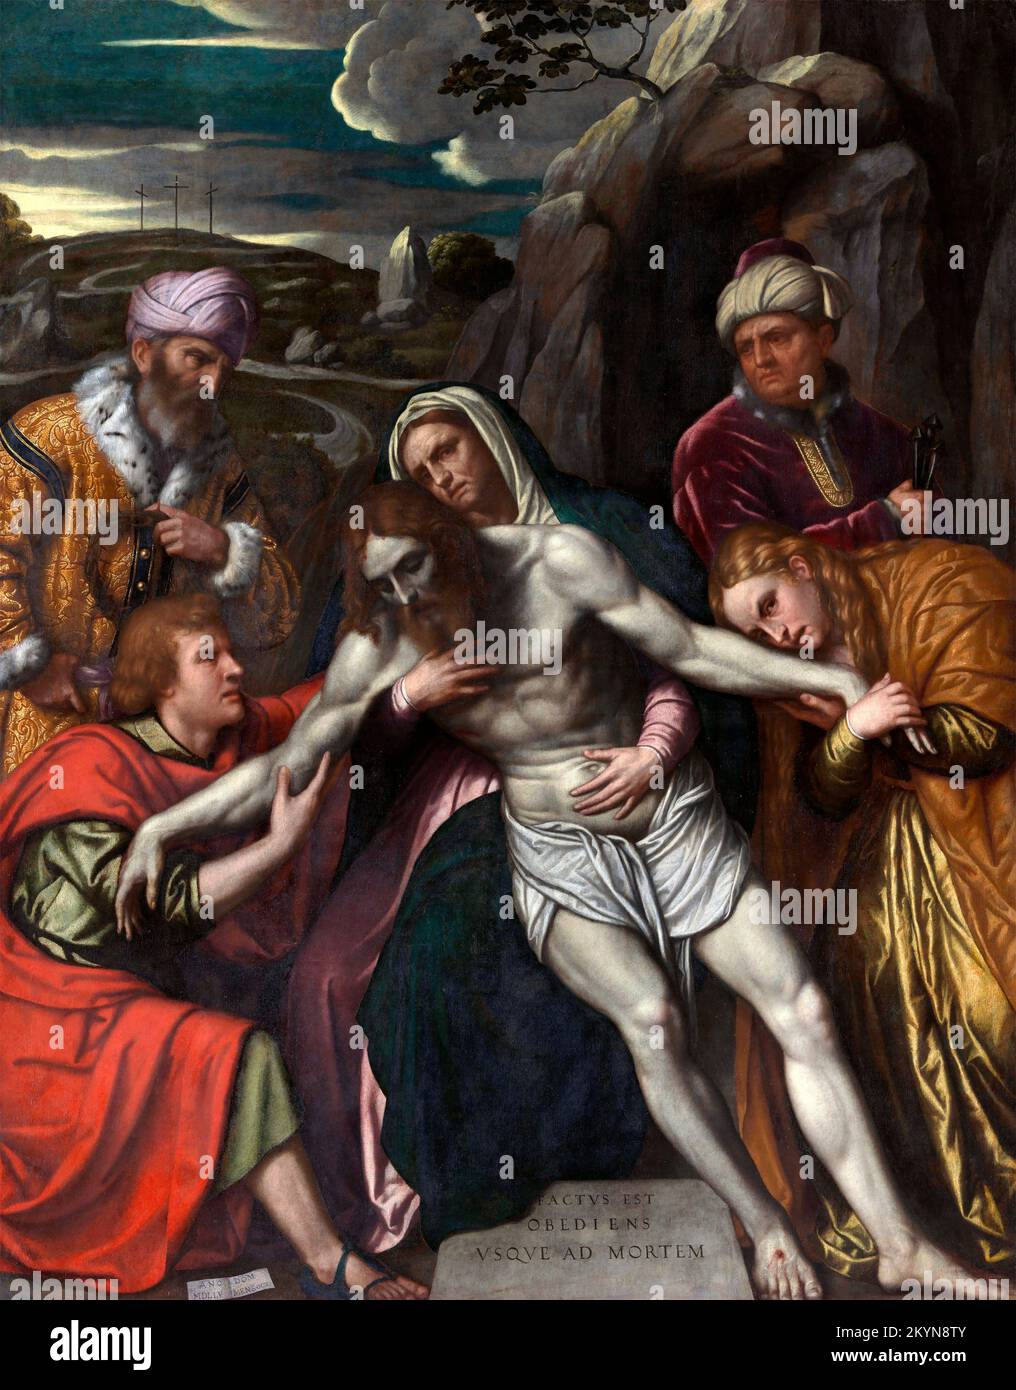 Moretto da Brescia. L'entombment d'Alessandro Bonvicino (aussi Buonvicino) (1498-1554), huile sur toile, 1554 Banque D'Images